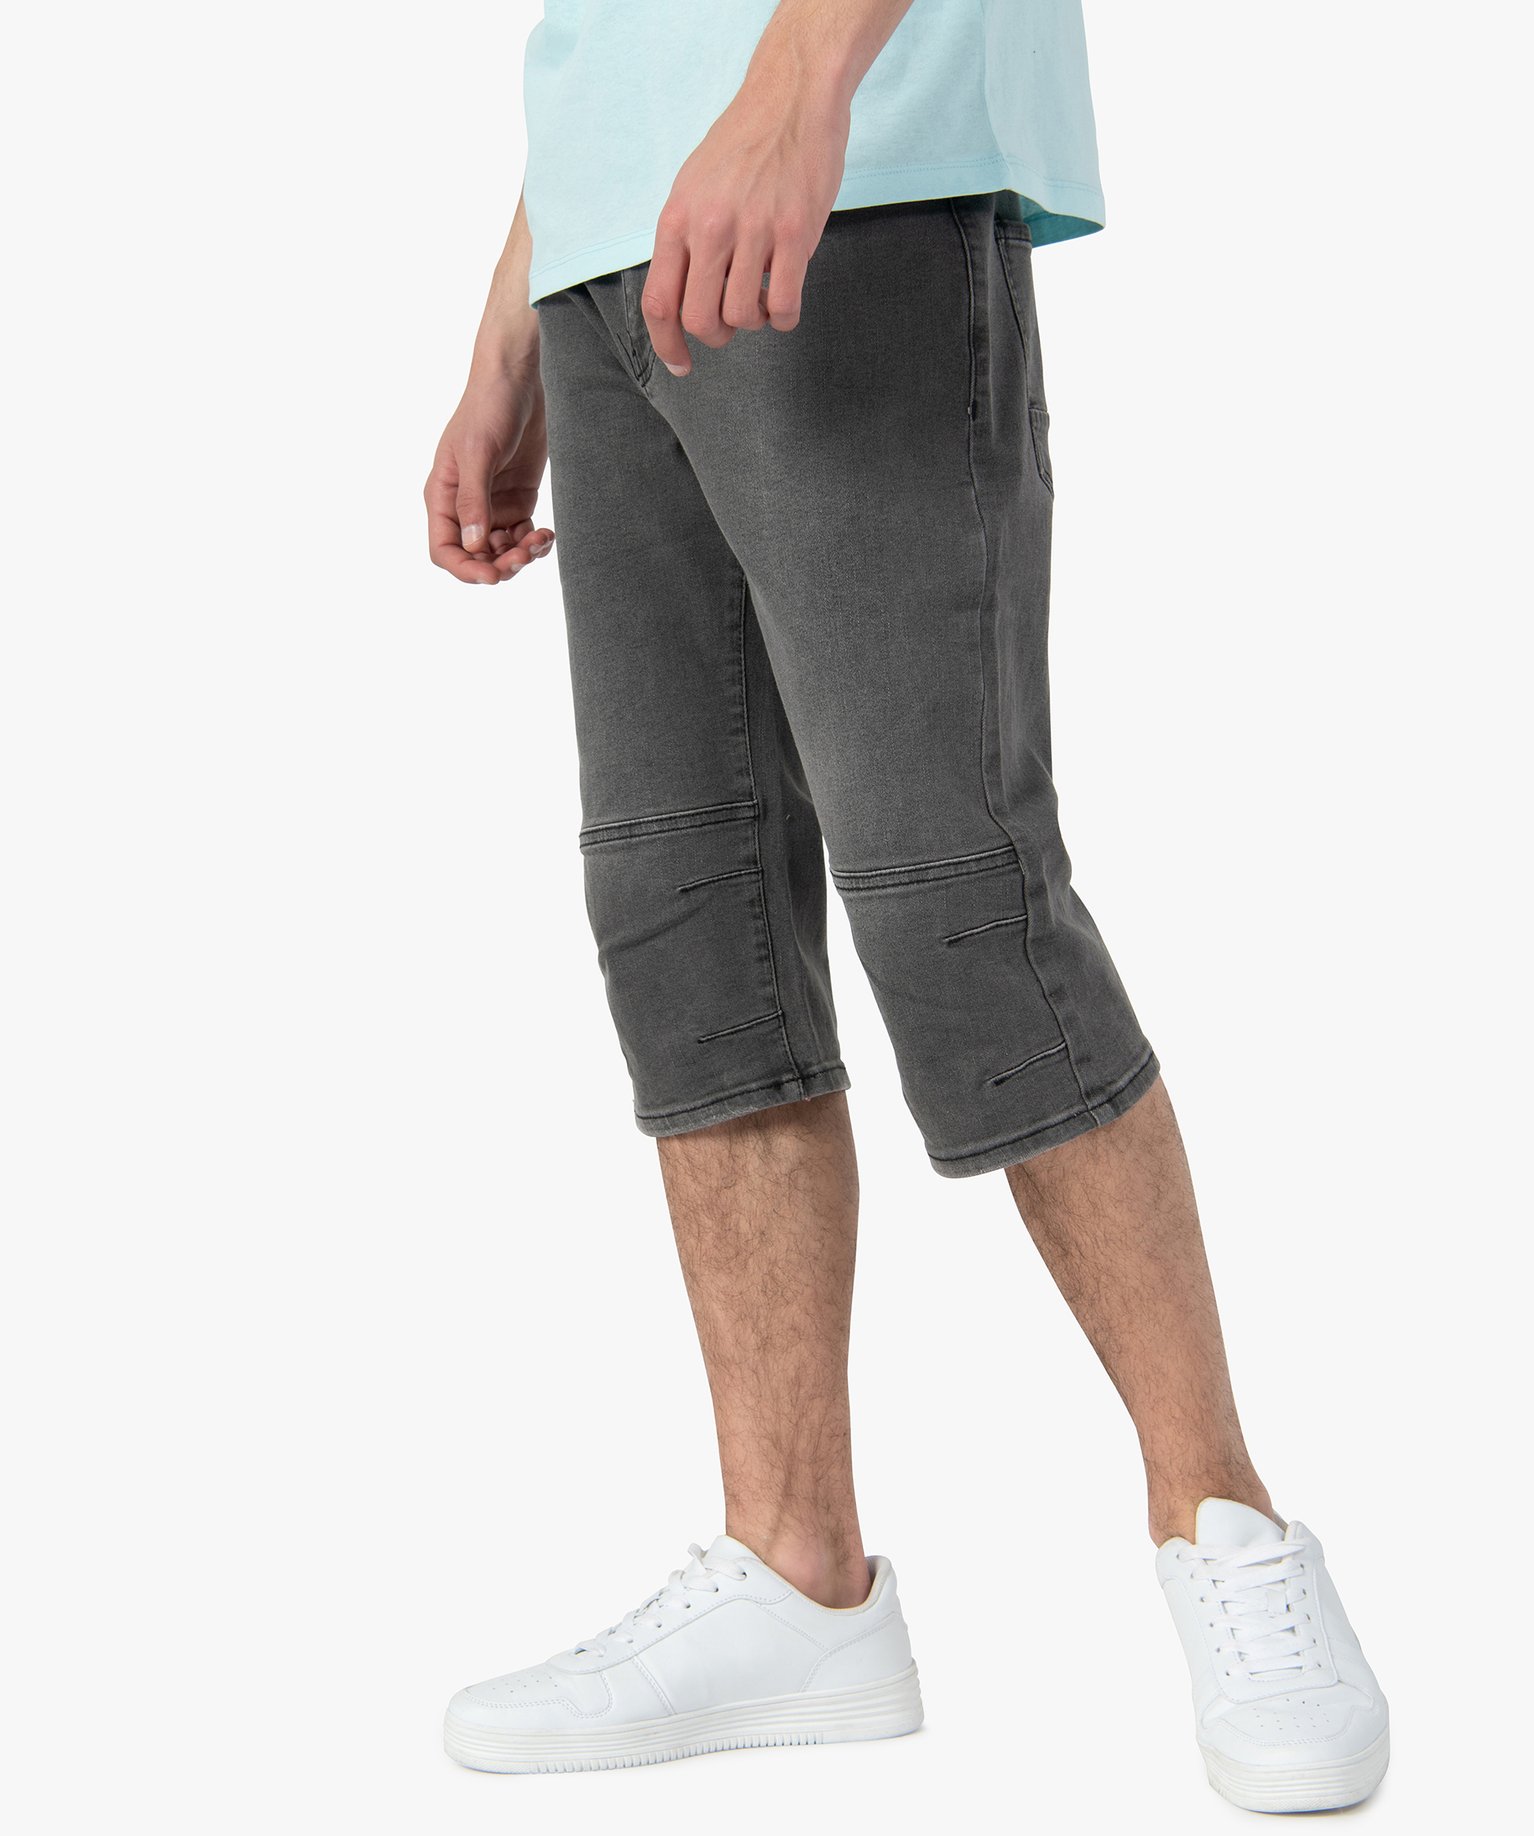 bermudapantacourt homme en jean legerement delave gris